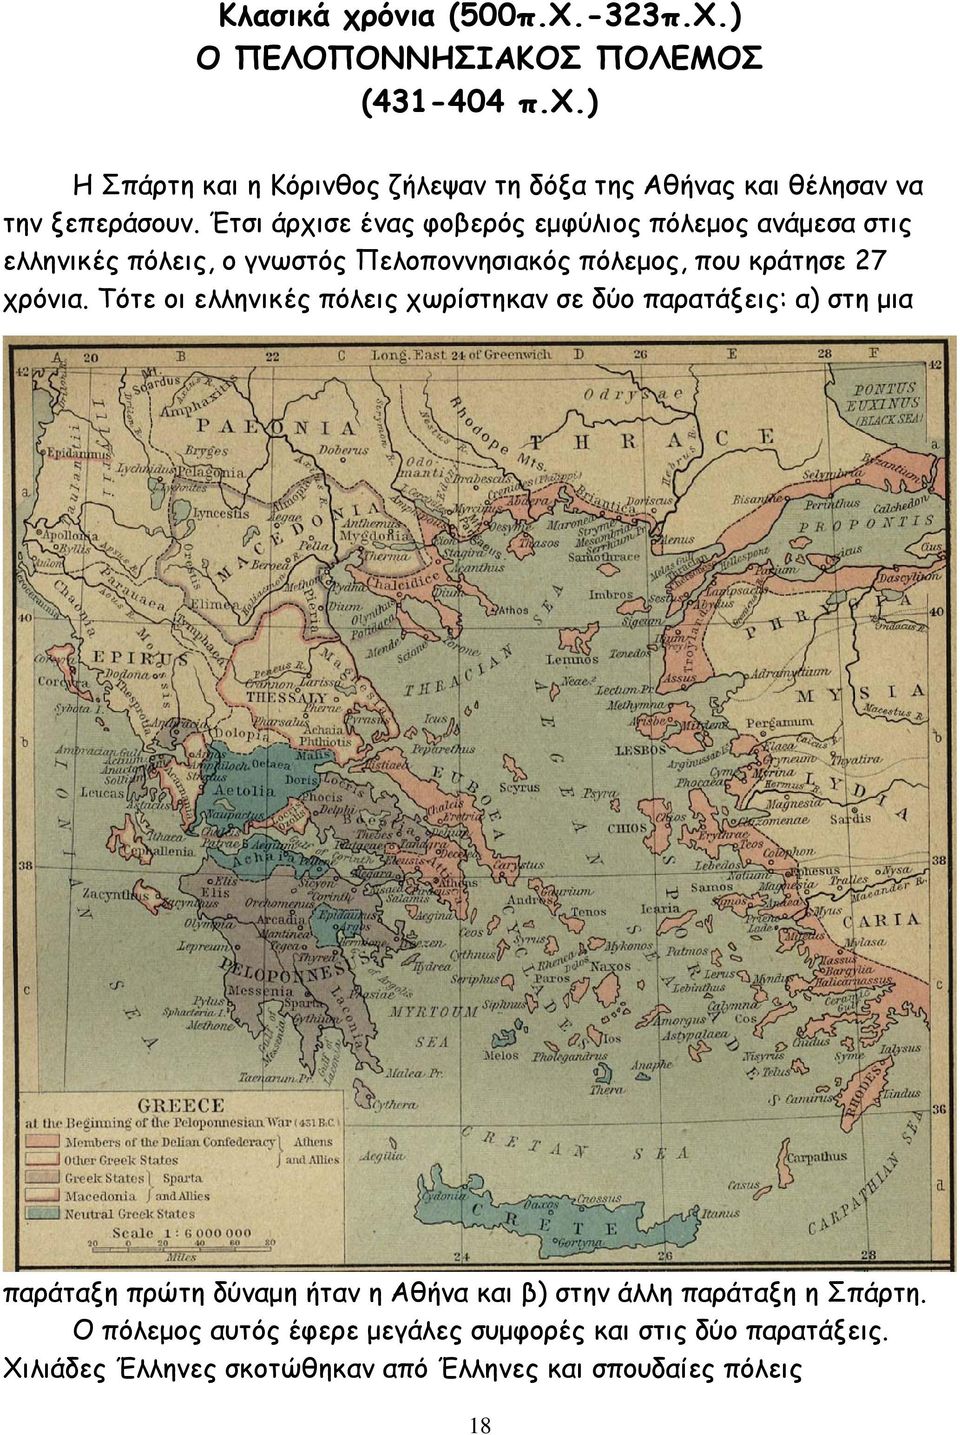 Τότε οι ελληνικές πόλεις χωρίστηκαν σε δύο παρατάξεις: α) στη µια παράταξη πρώτη δύναµη ήταν η Αθήνα και β) στην άλλη παράταξη η Σπάρτη.